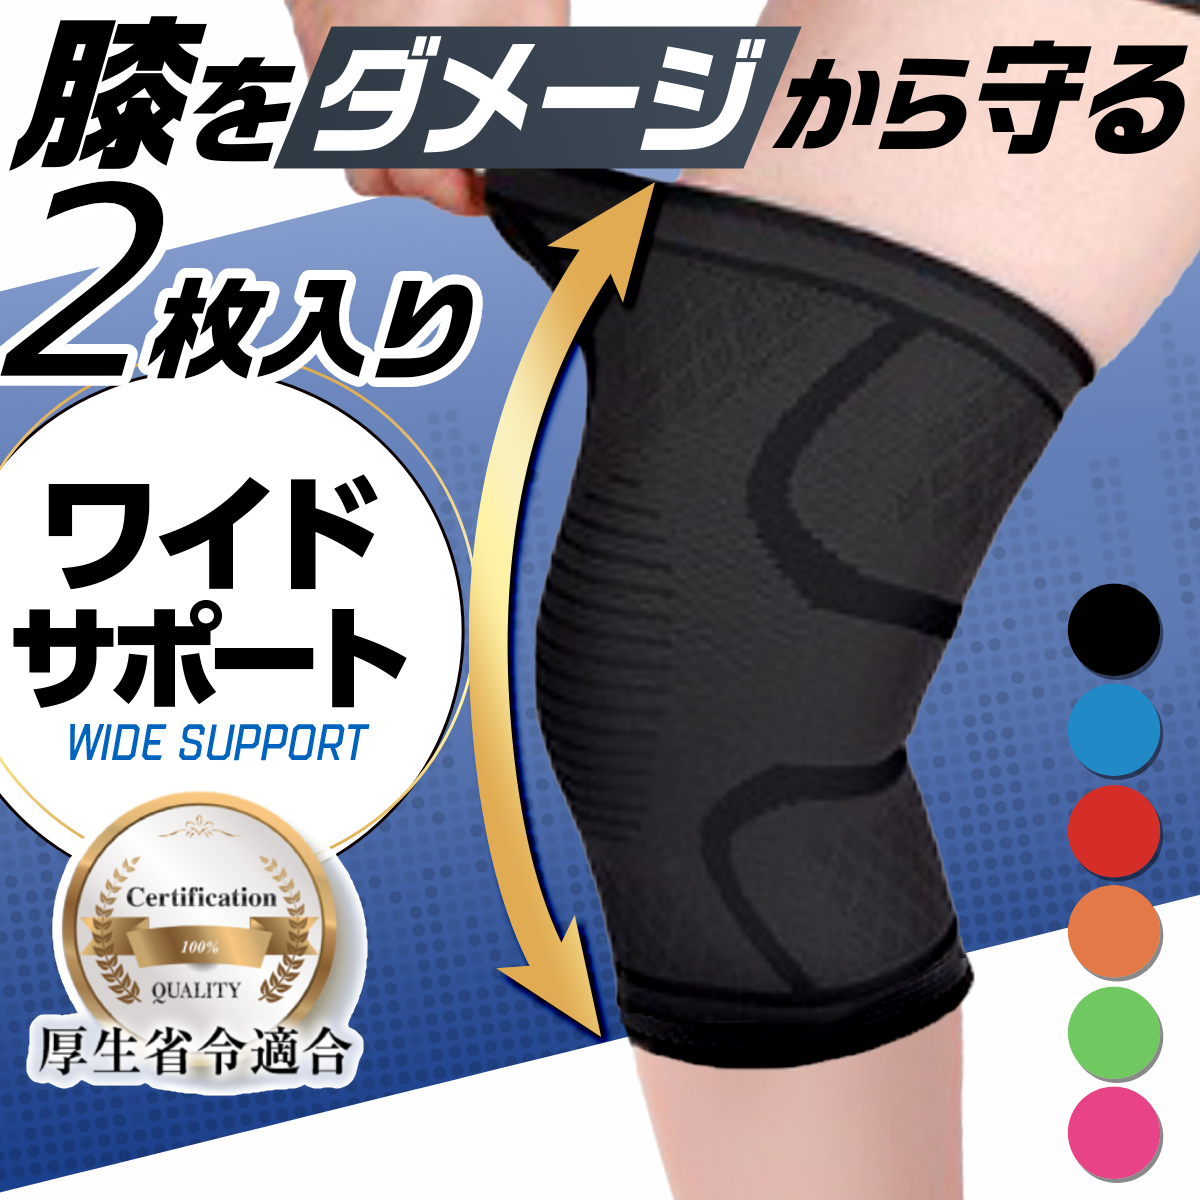 膝 サポーター スポーツ ランニング 保護 膝当て 膝パッド 医療用 ひざ ニーリフレクターの商品画像